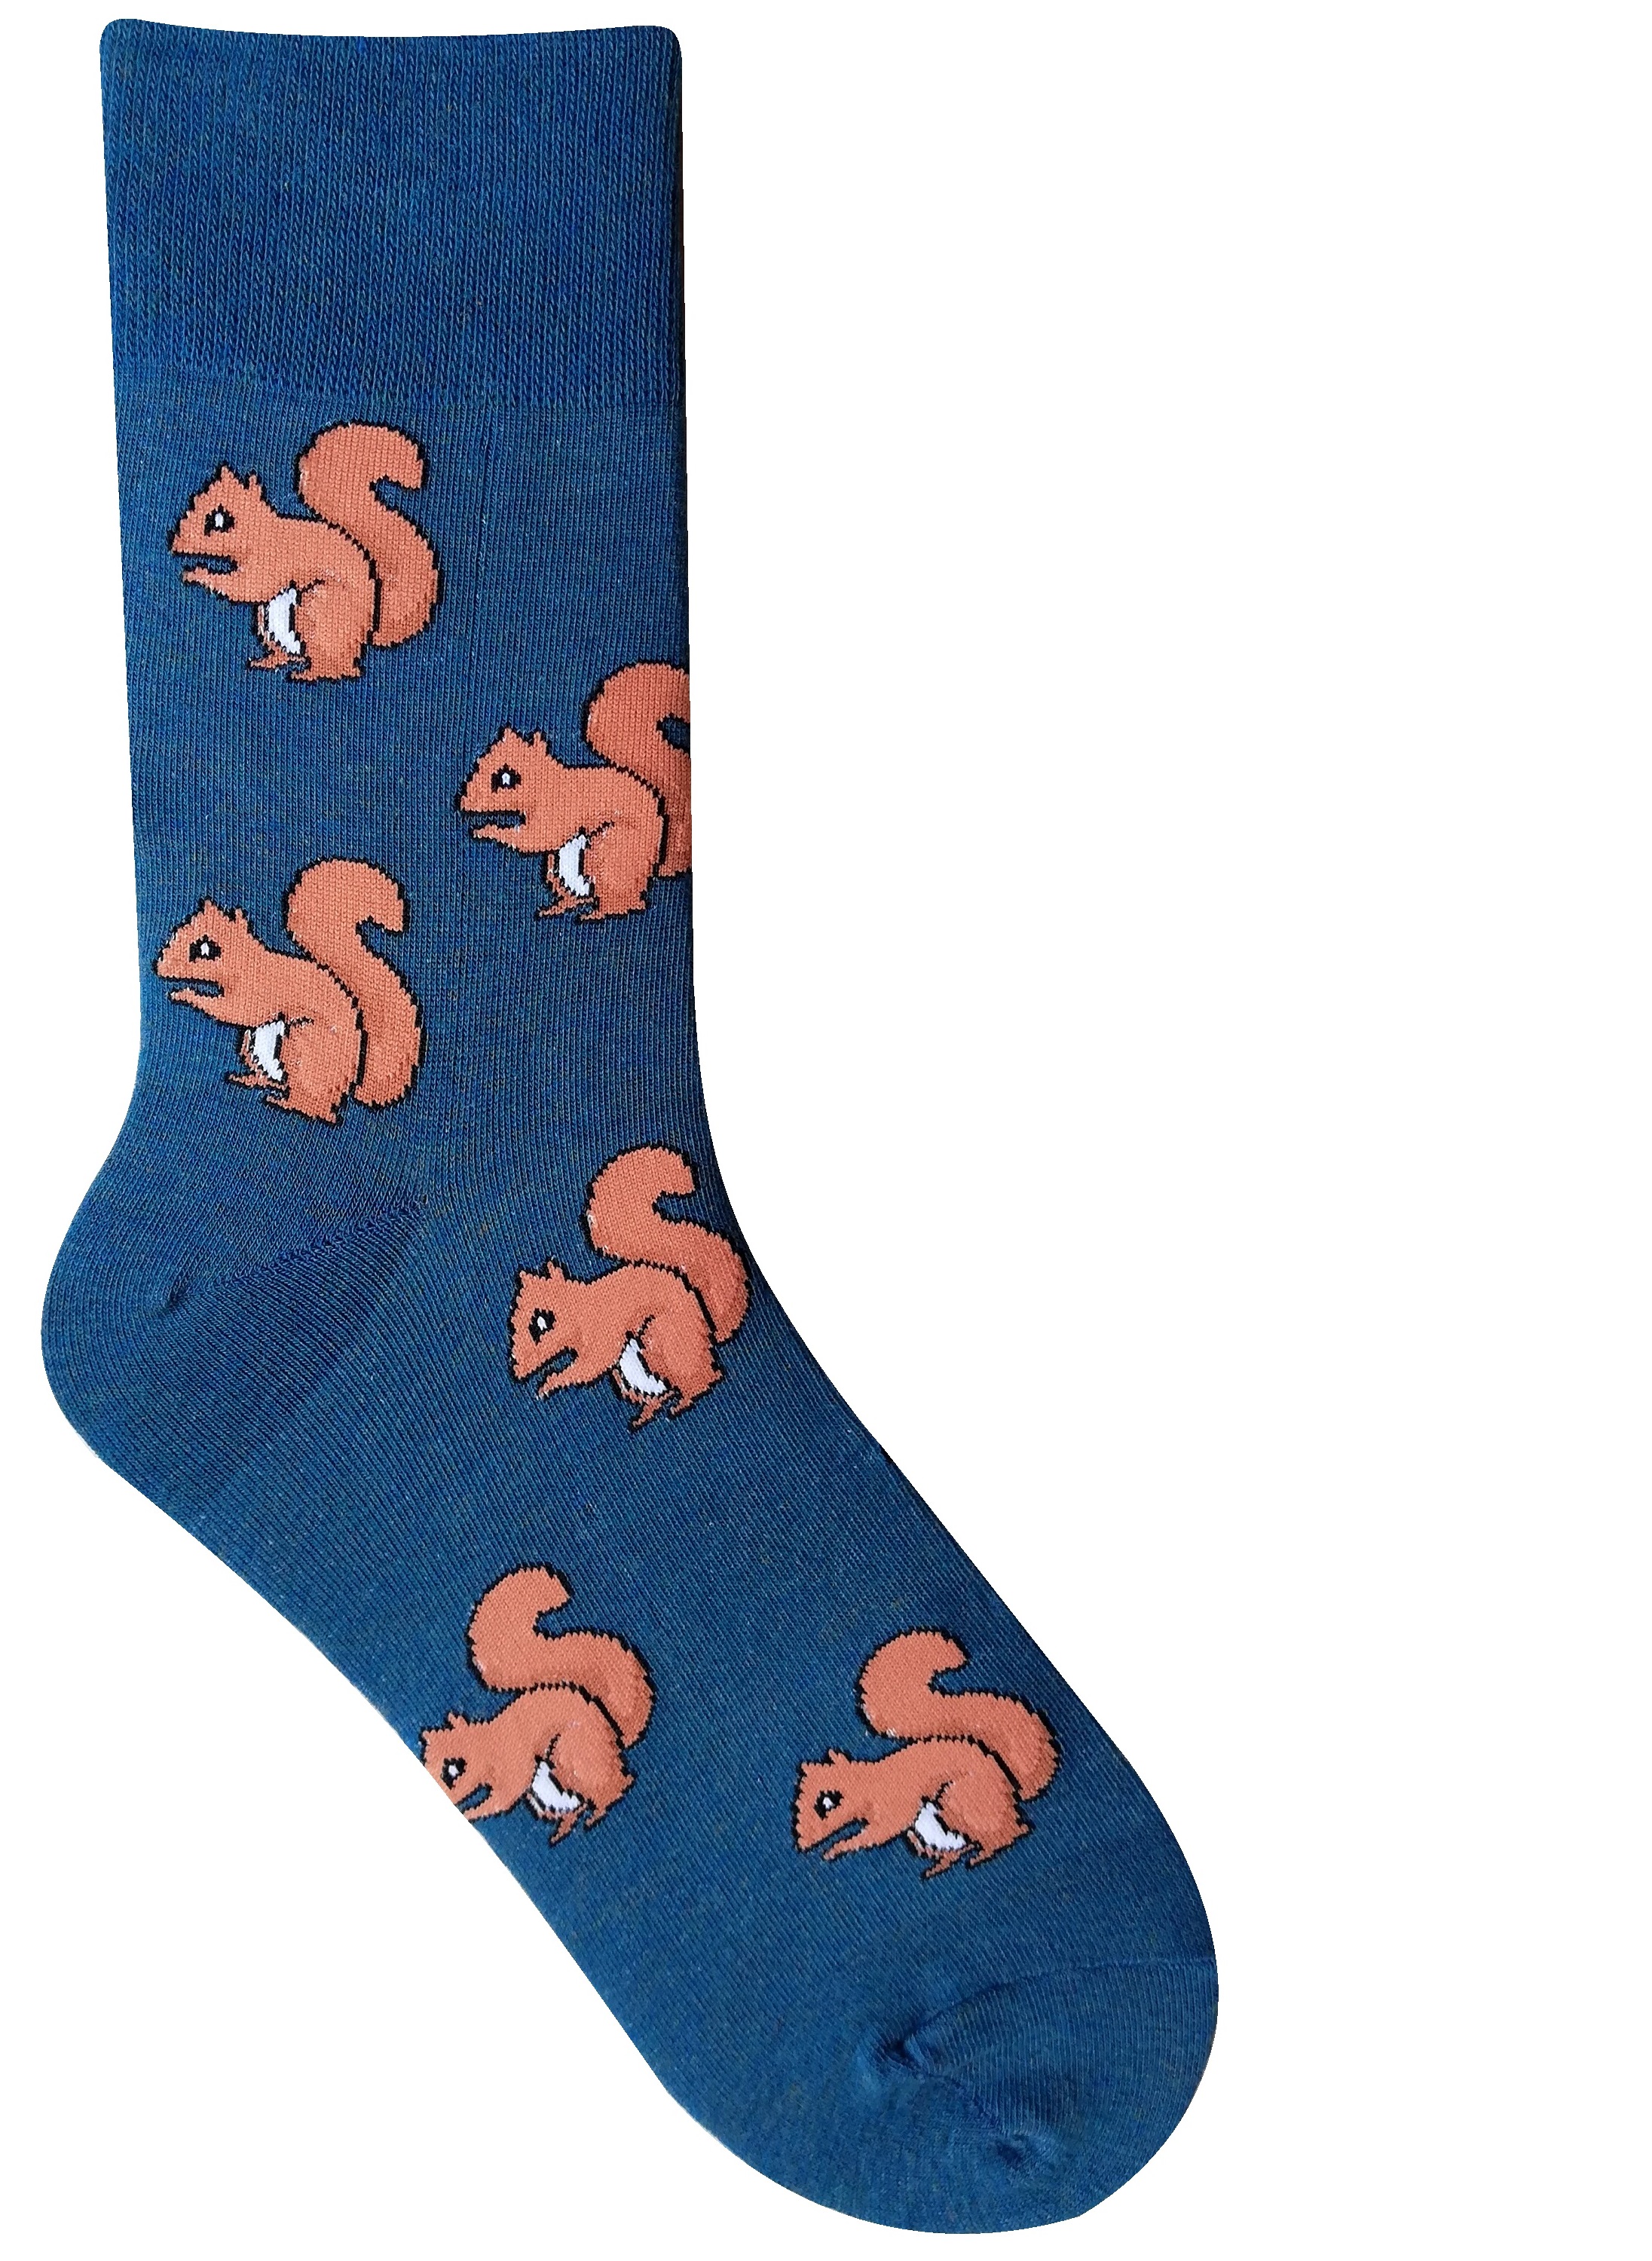 Eichhörnchen Socken Gr. 36-41/42-47